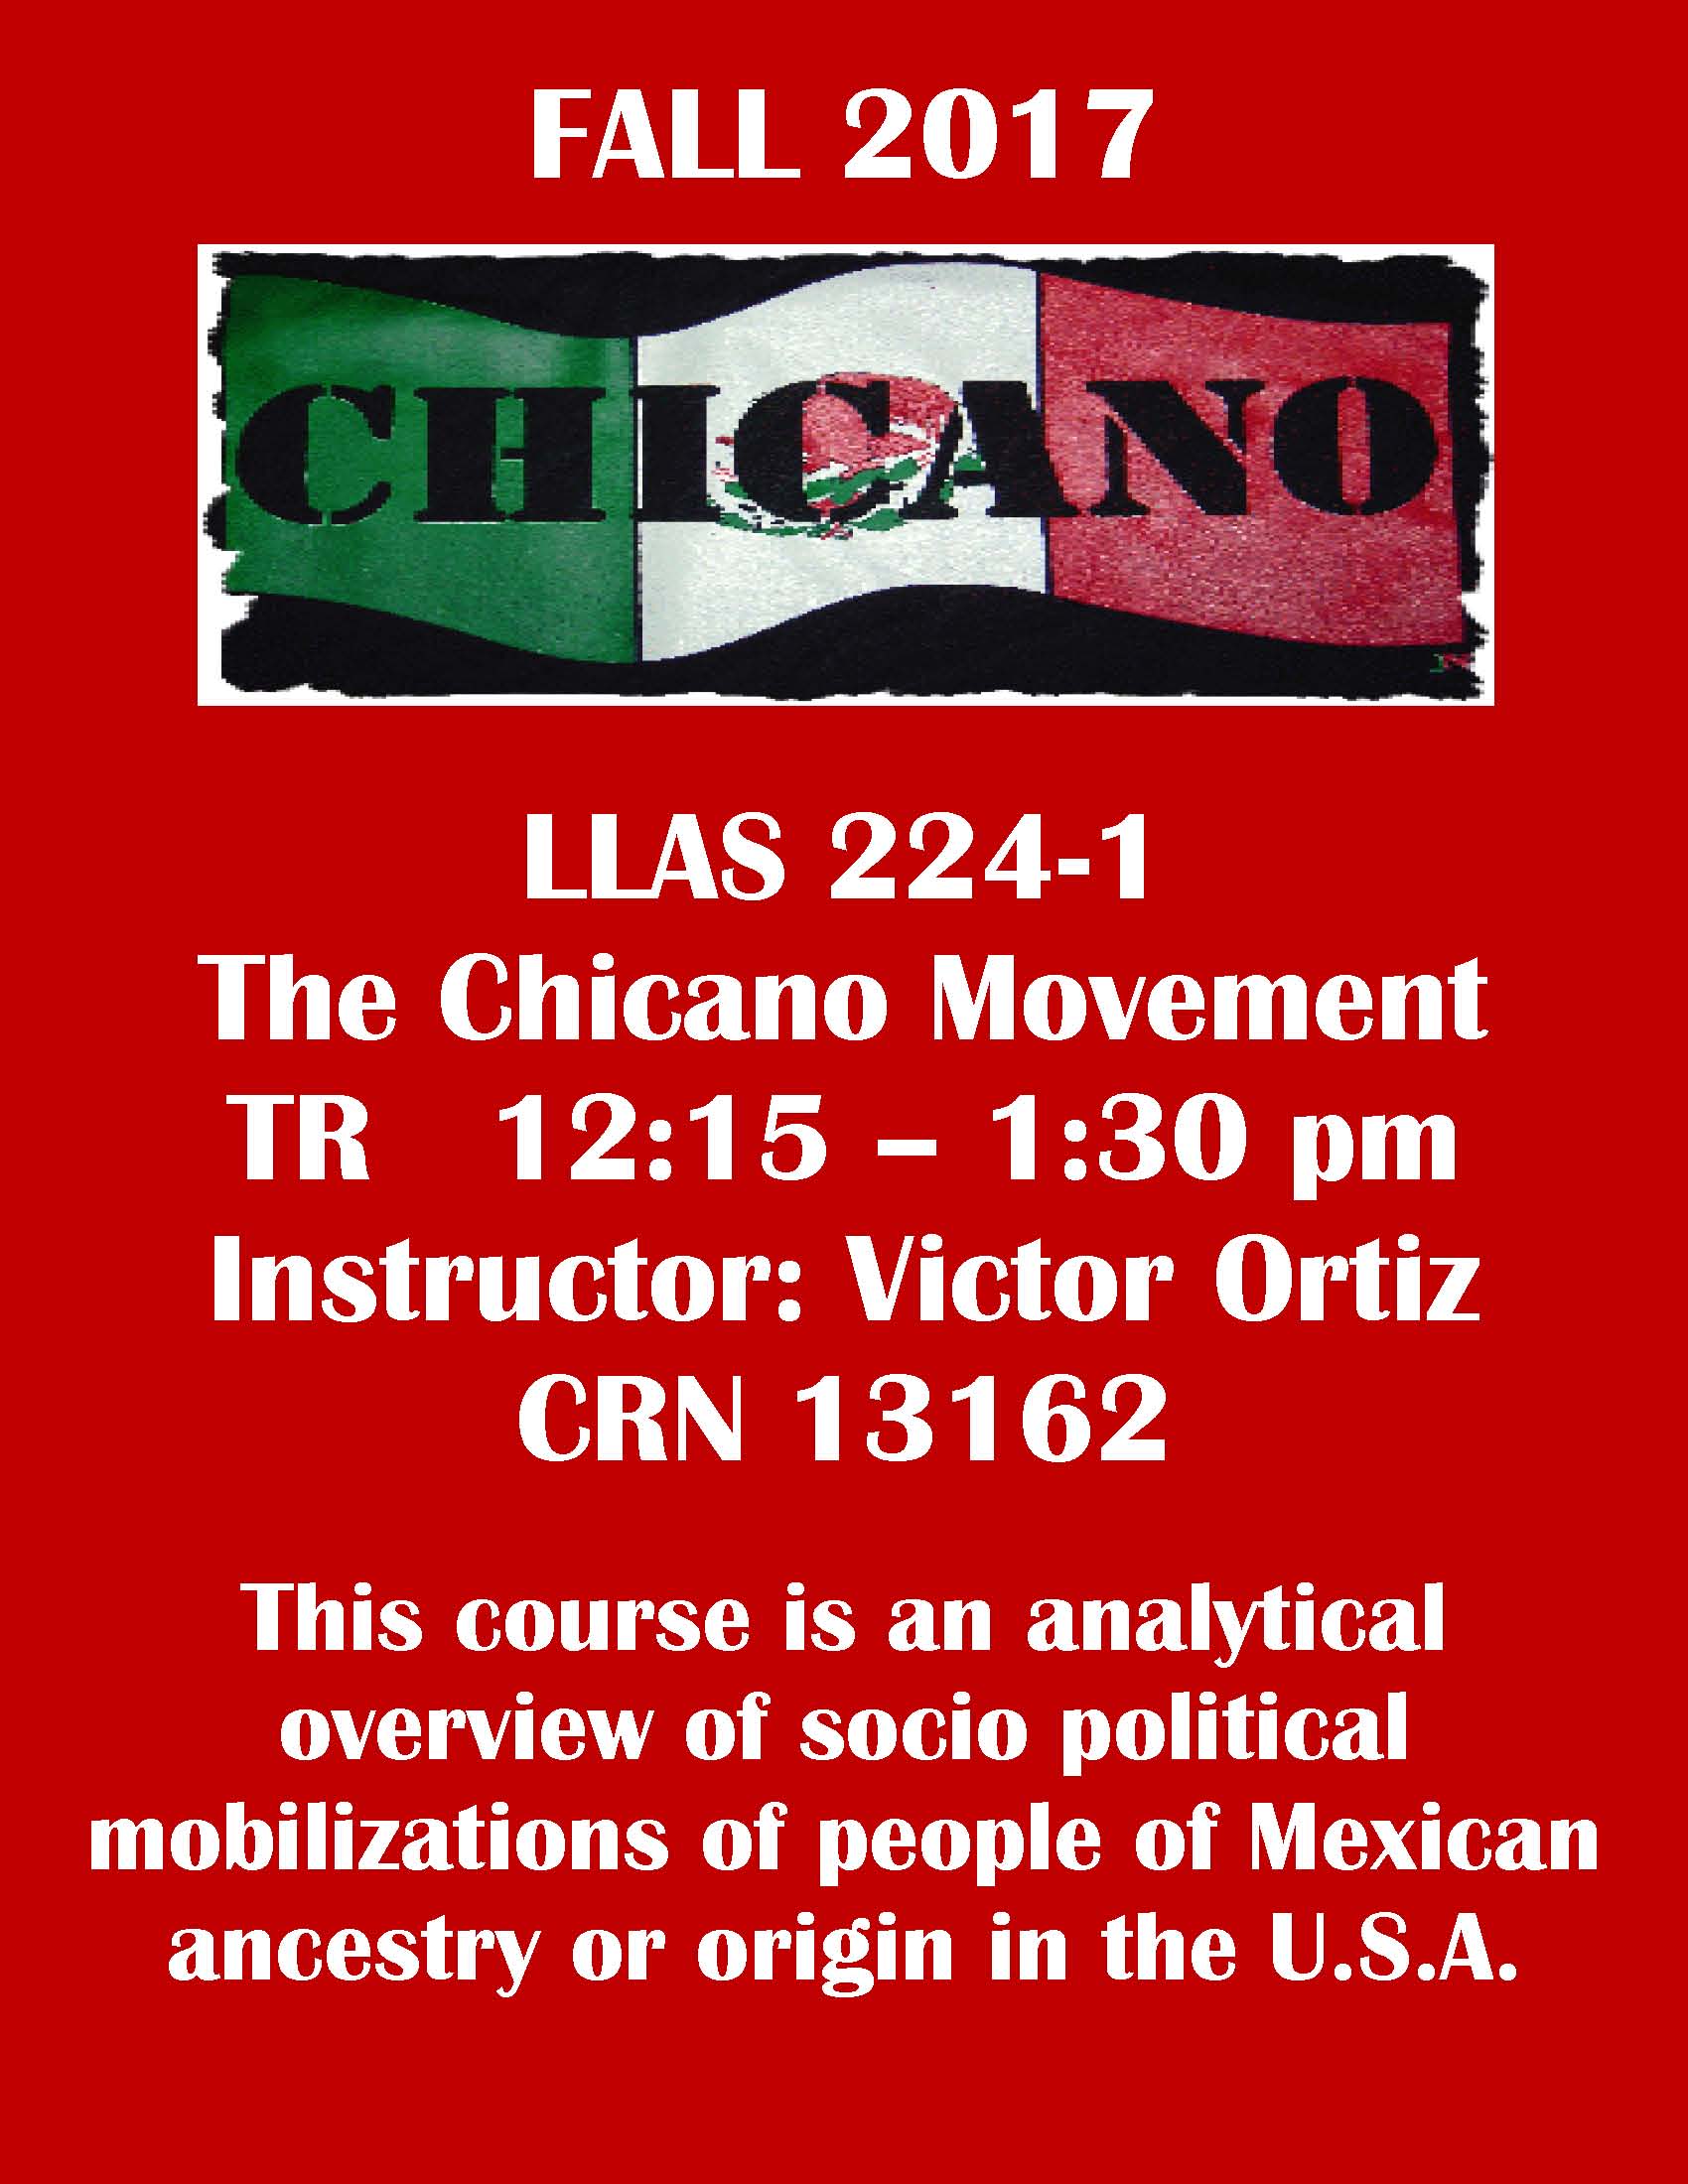 LLAS 224-1 - The Chicano Movement